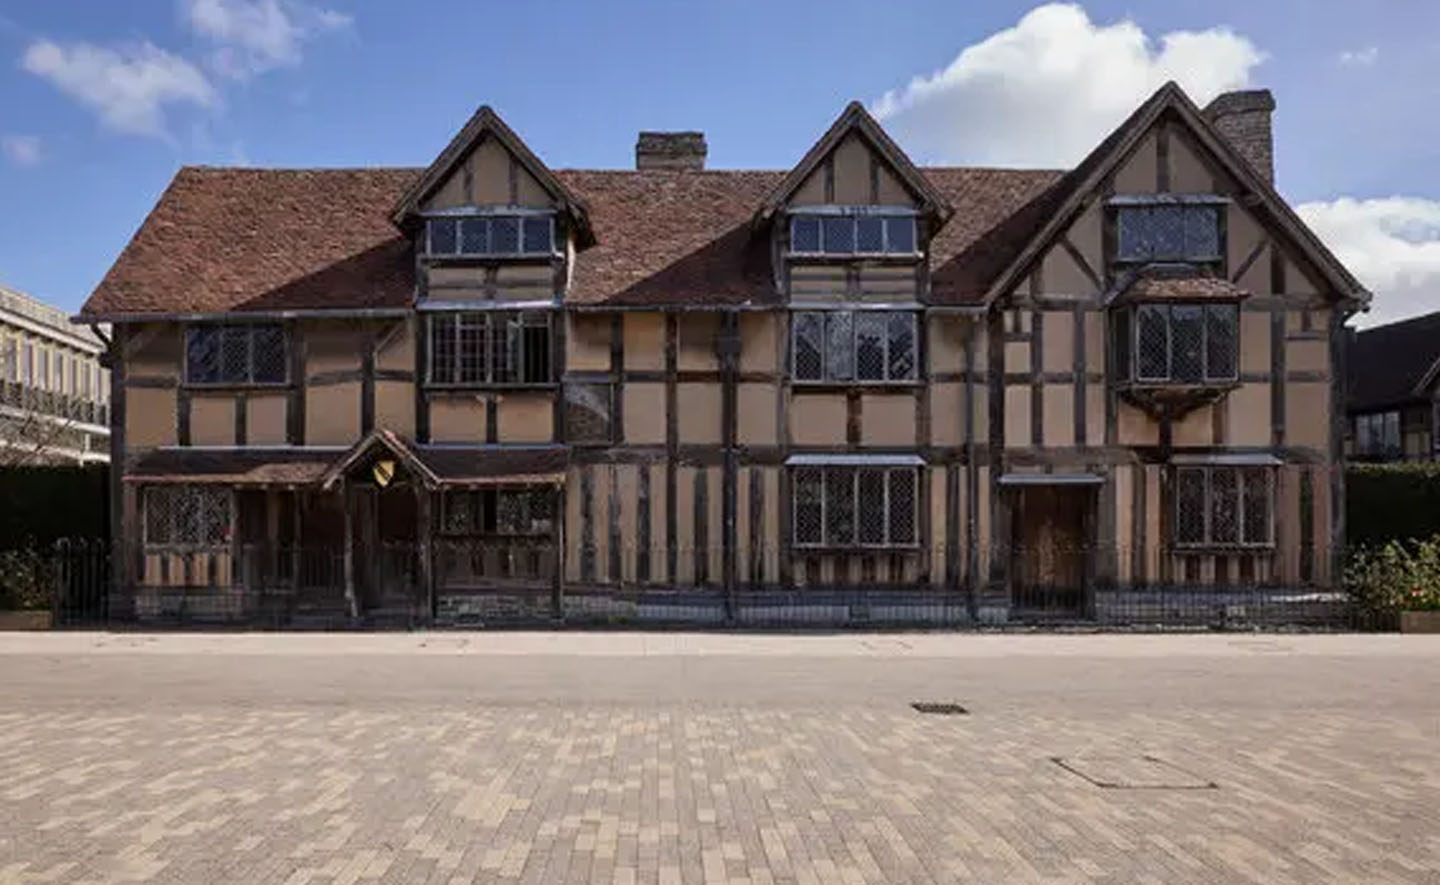 460 năm trước, Shakespeare đã được sinh ra trong ngôi nhà này?